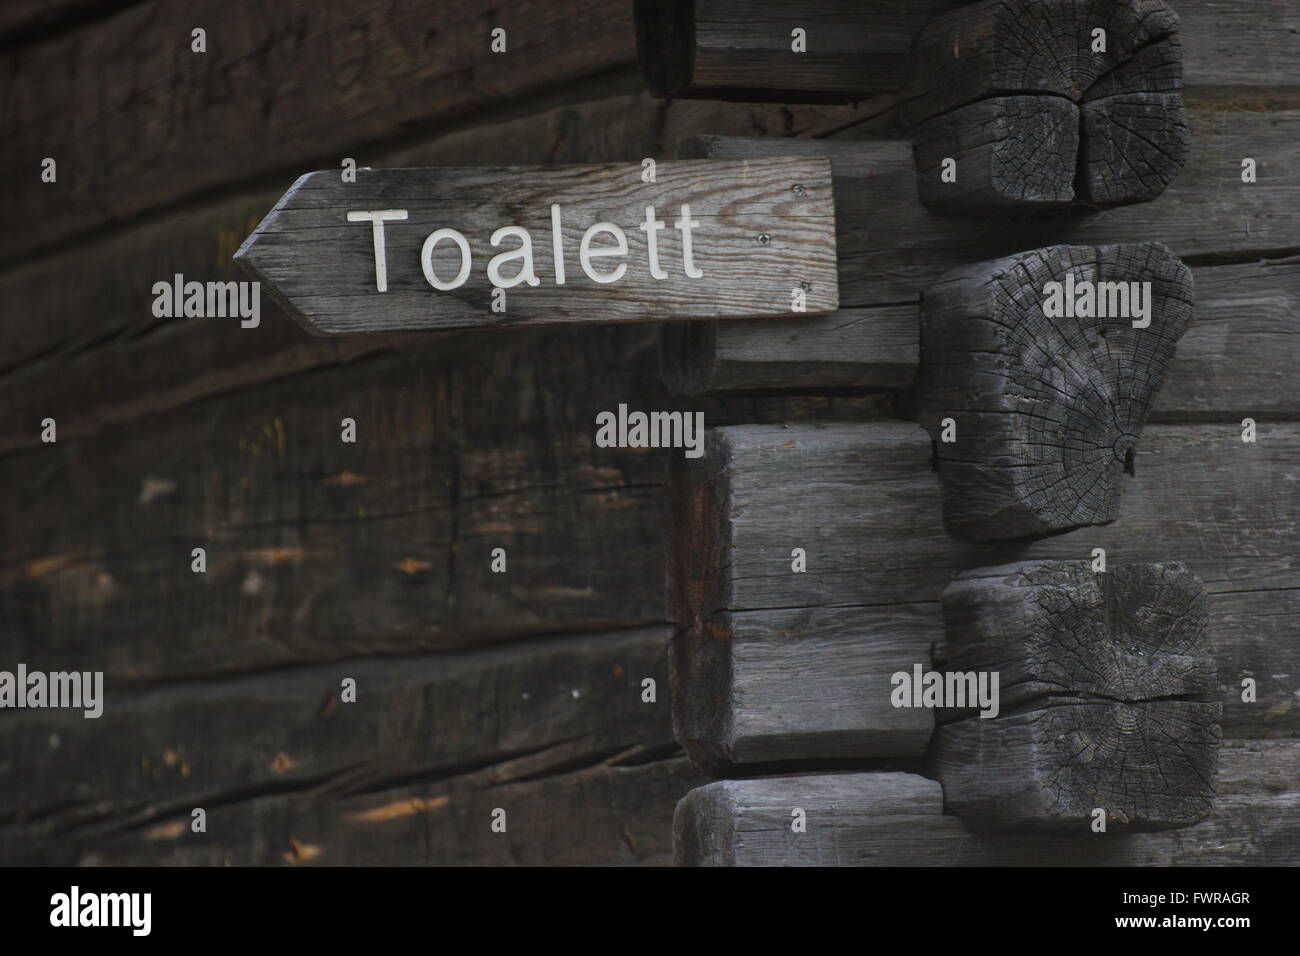 Toilet sign (Swedish word: 'Toalett'). Stock Photo